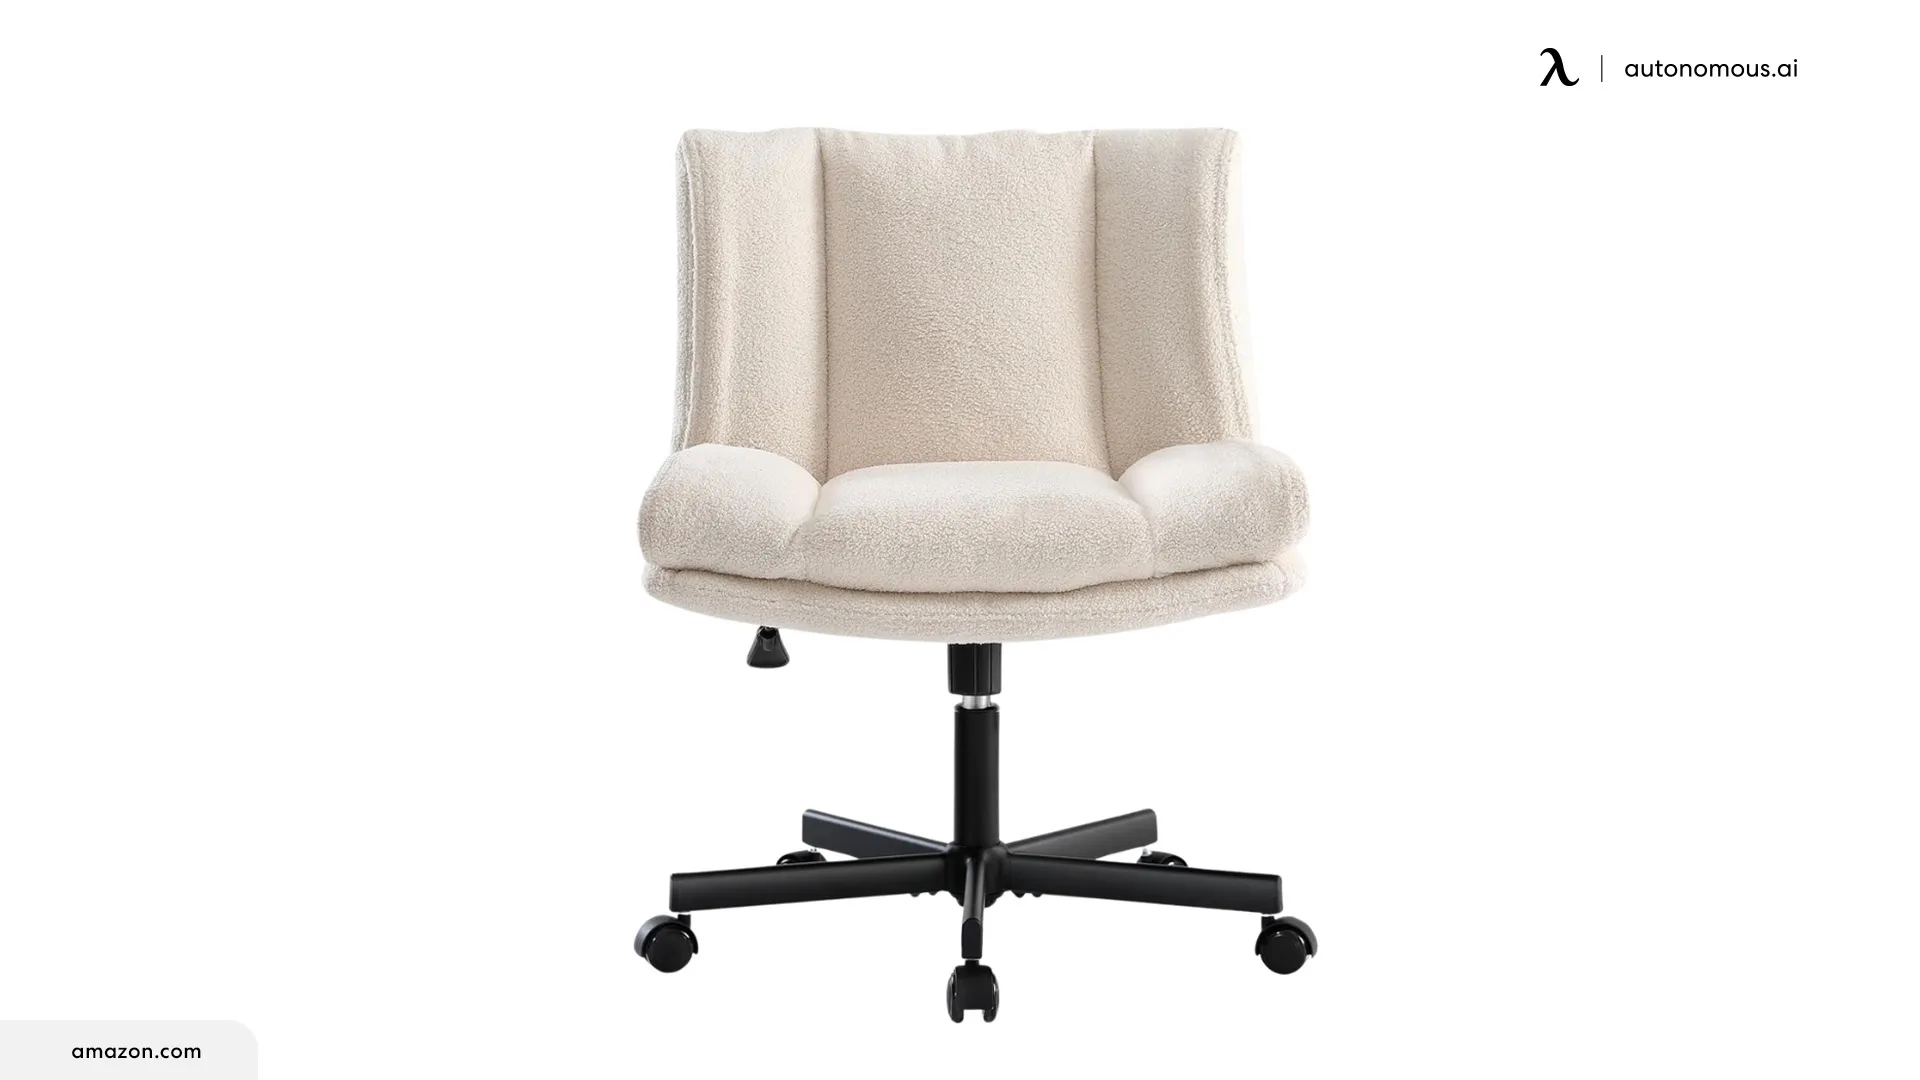 LEAGOO Armless Desk Chair